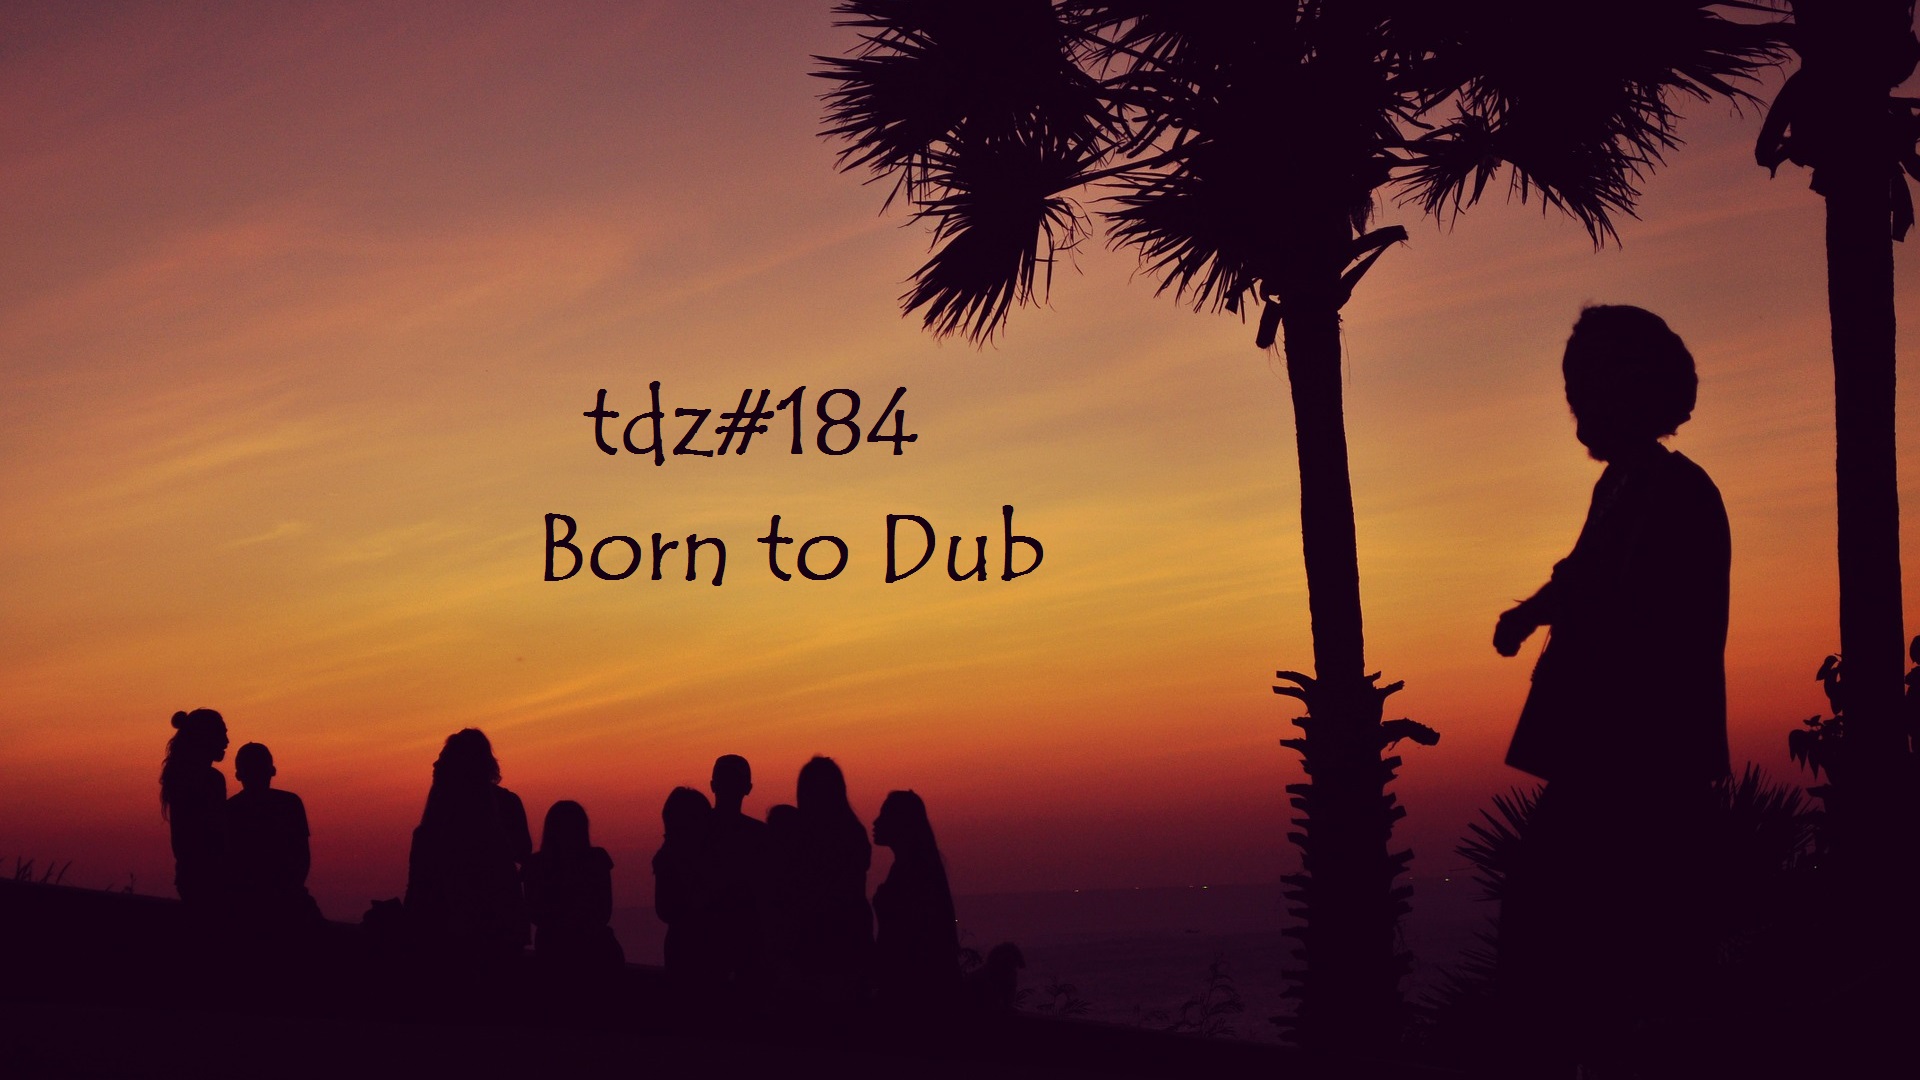 TDZ#184... Born to Dub.....